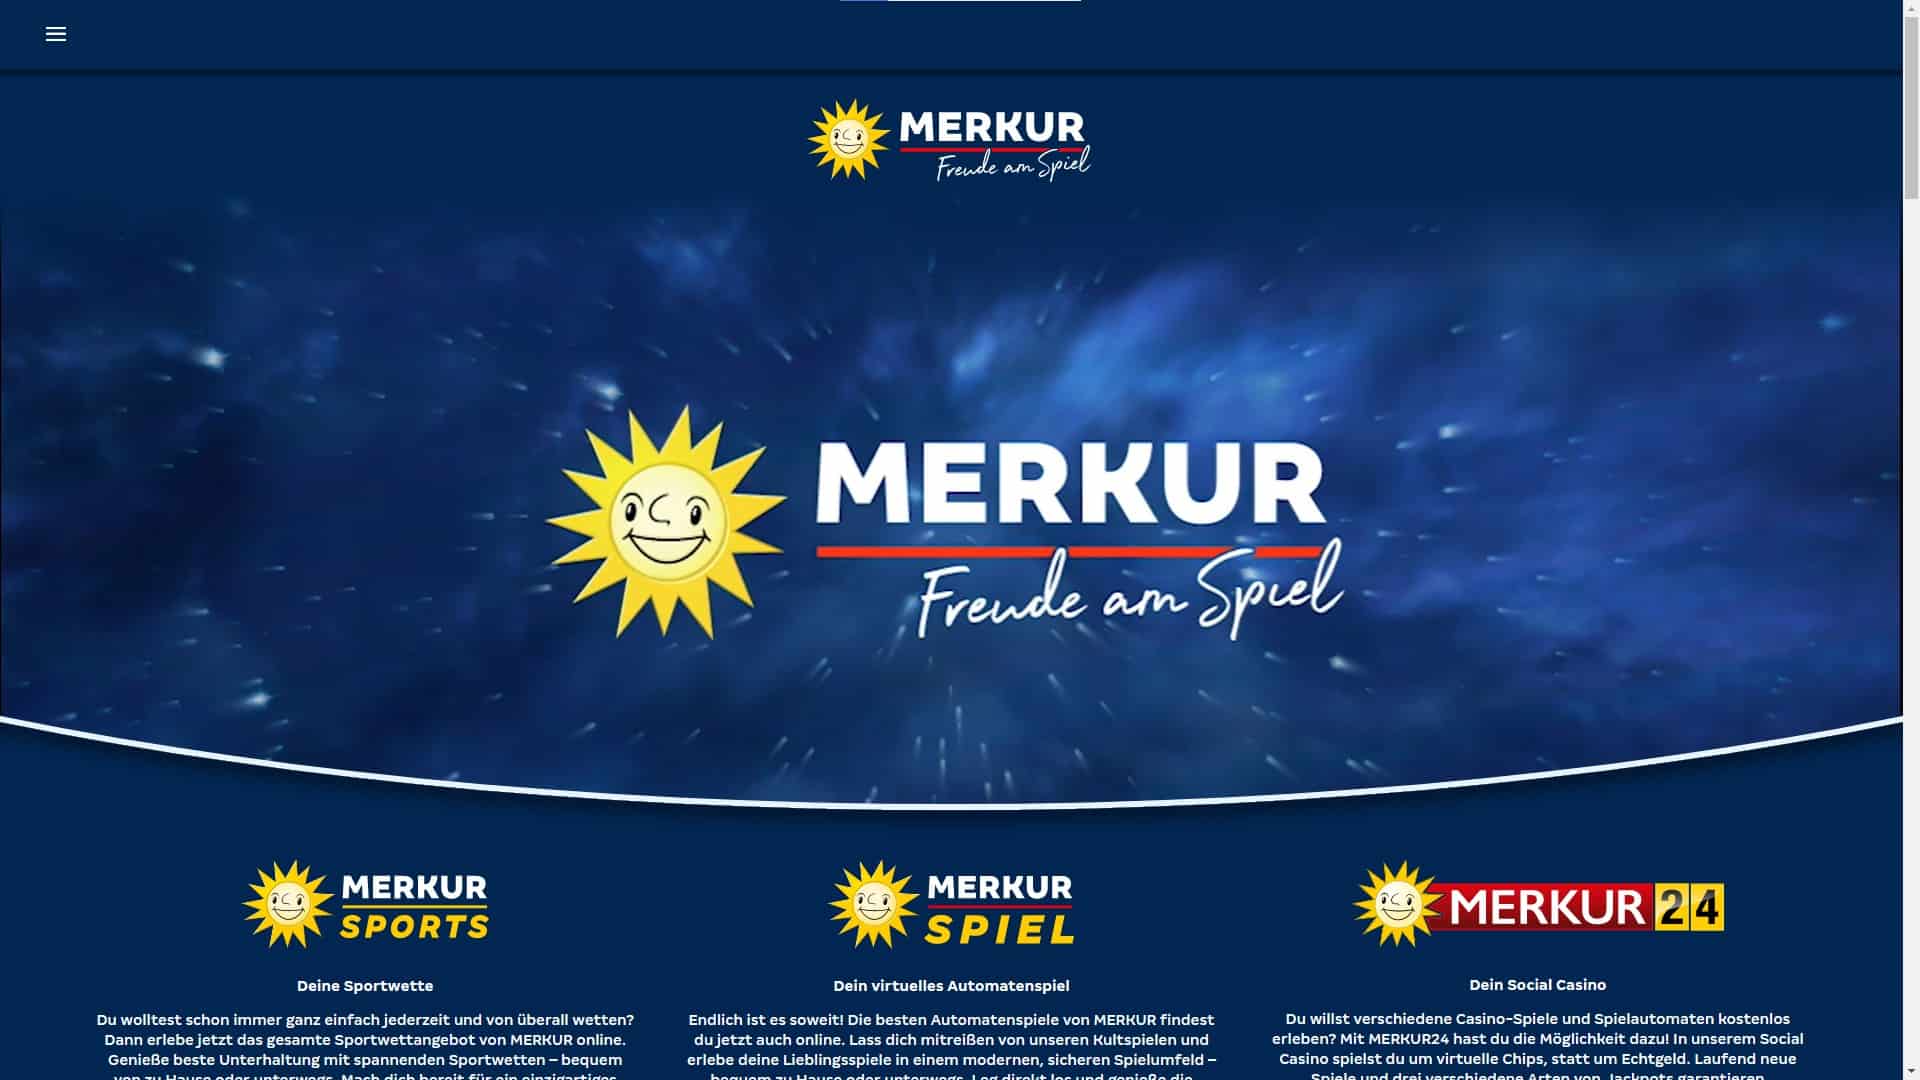 Merkur_Homepage_DE